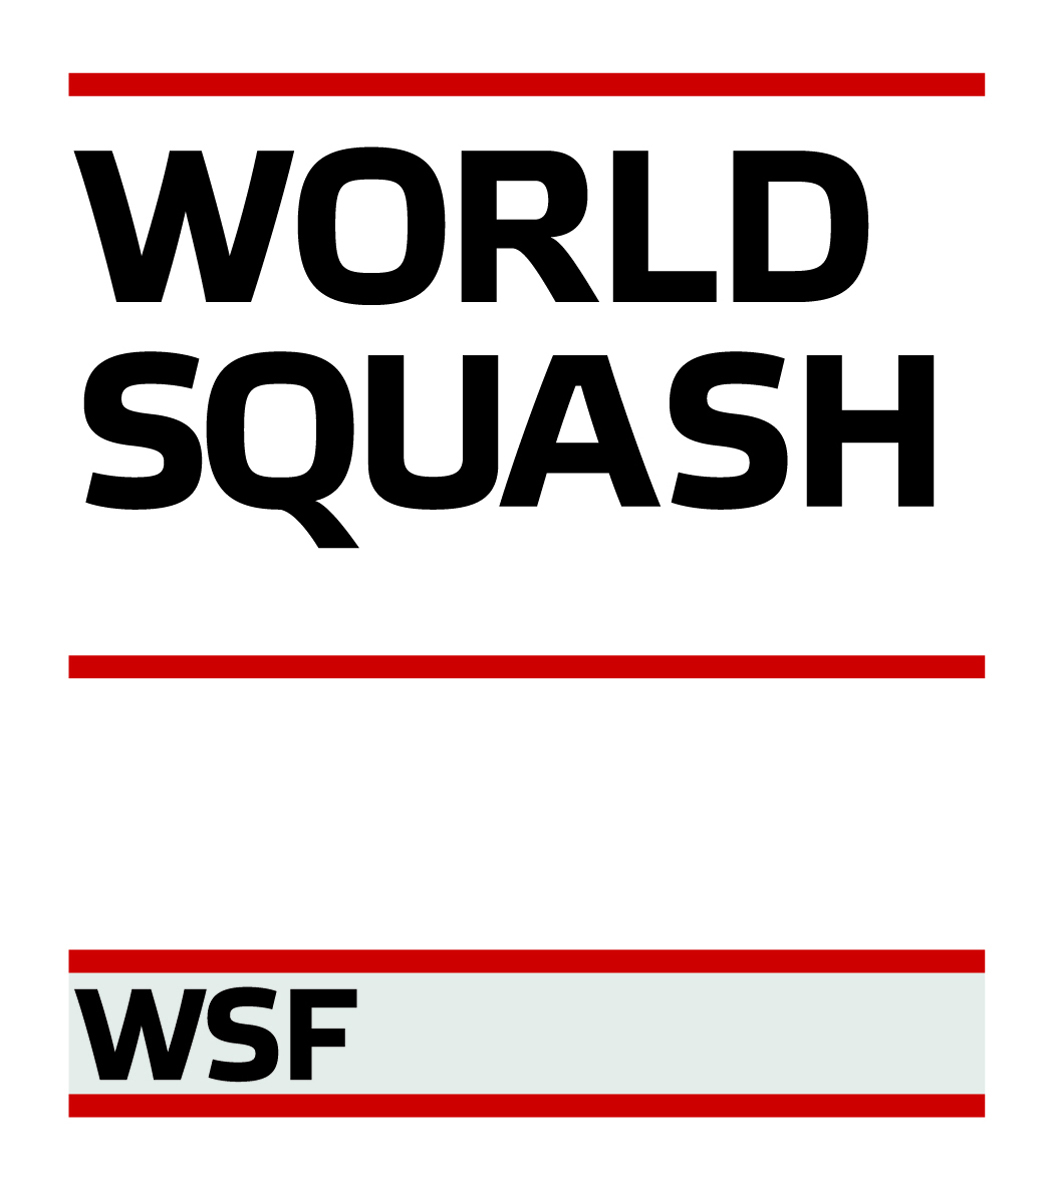 Logo WSF